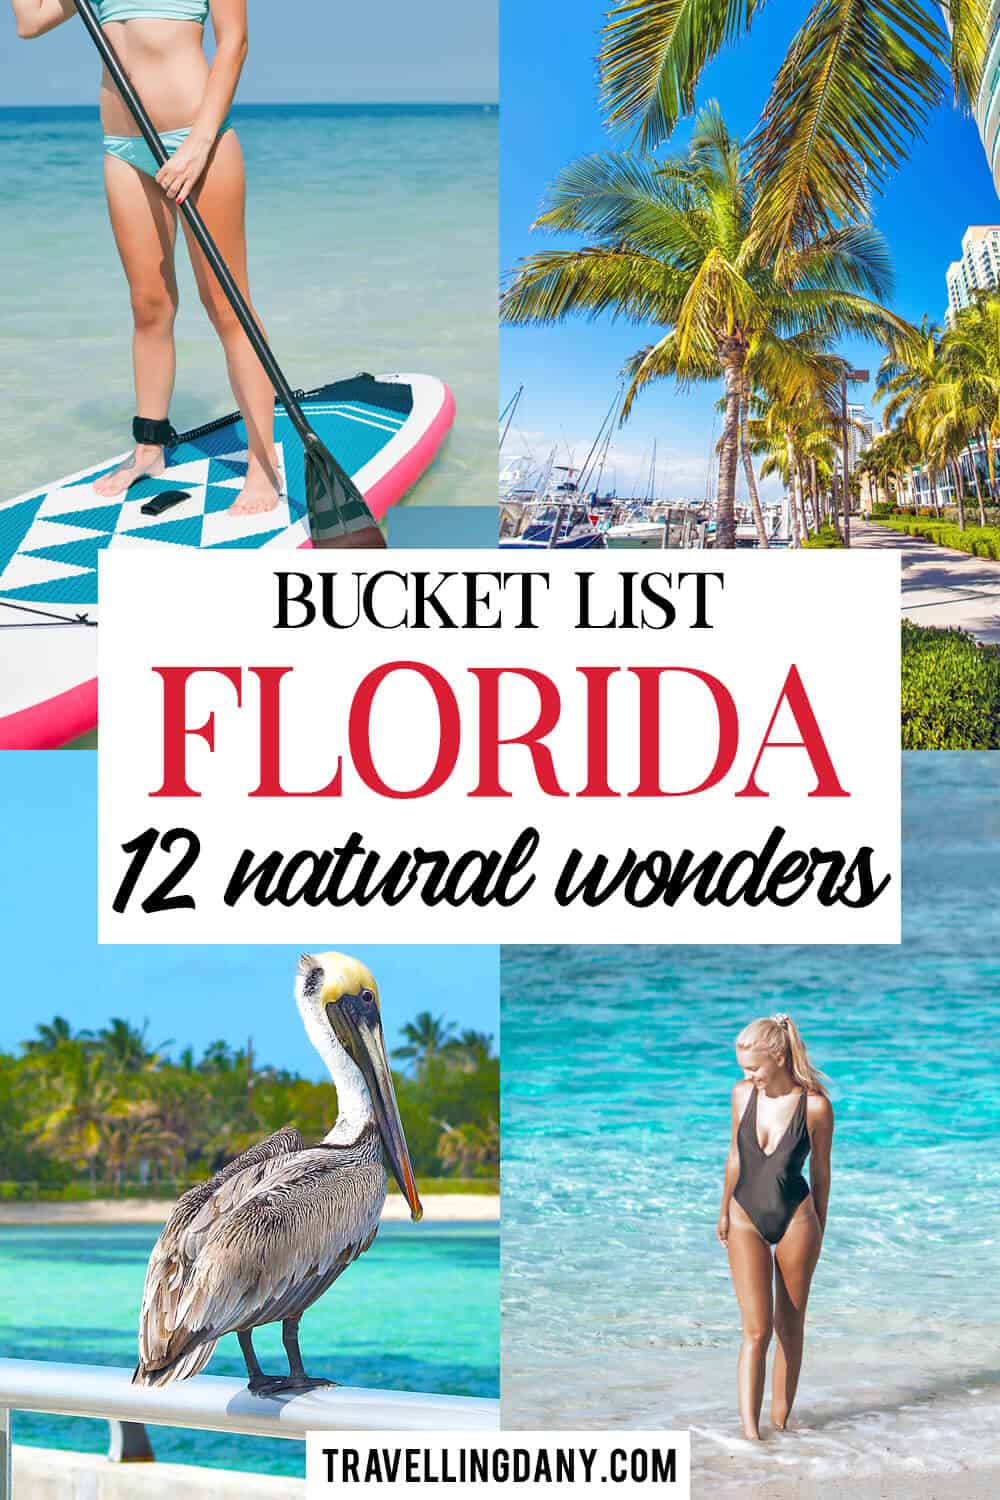 Stai organizzando il tuo prossimo viaggio negli USA? Se cerchi idee da sogno, le hai appena trovate! Scopri 12 meraviglie naturali in Florida e preparati a partire!